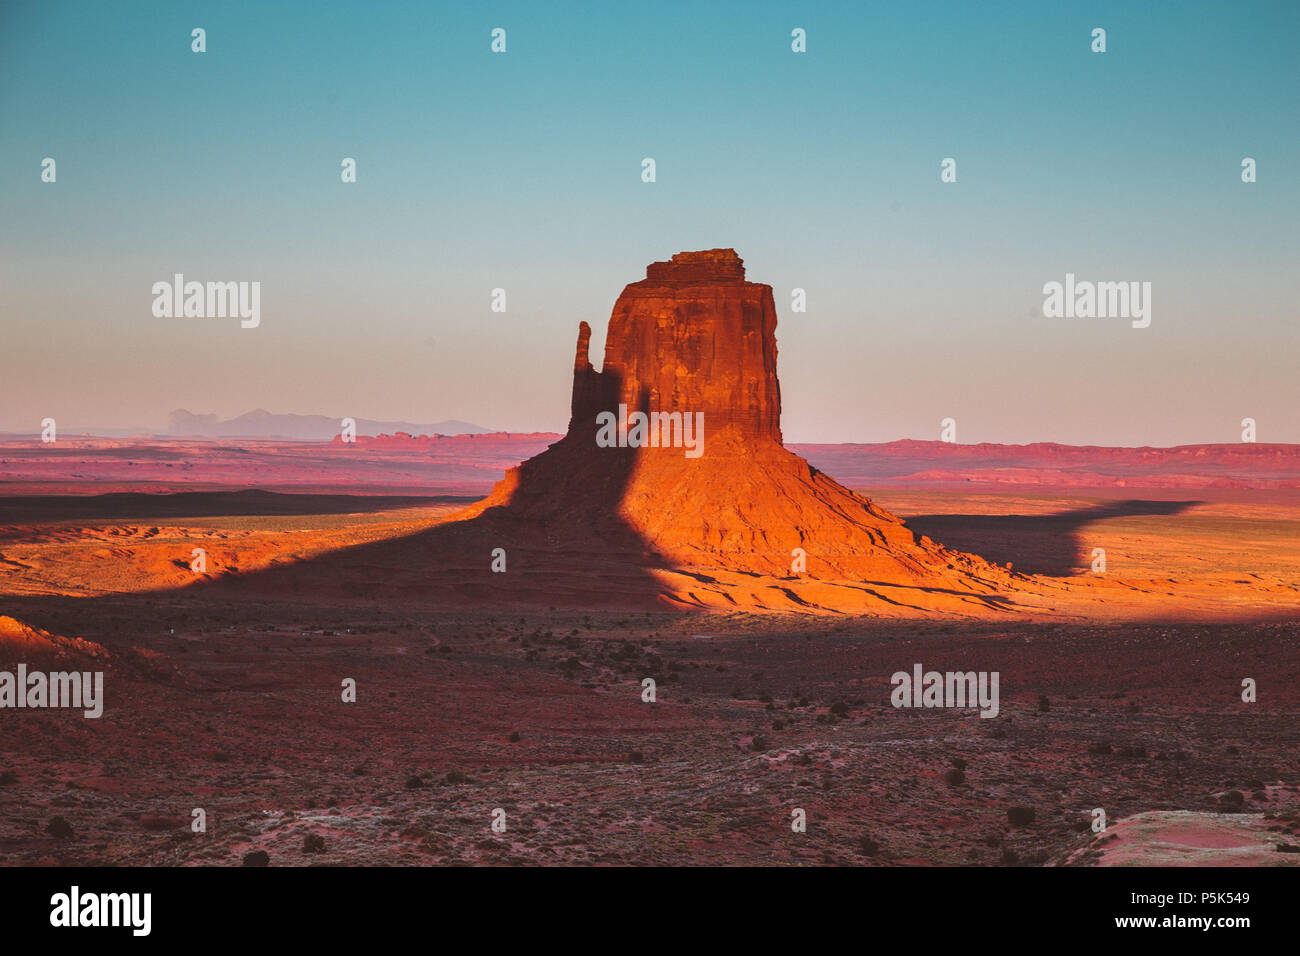 Klassische Ansicht der berühmten Monument Valley mit Schatten des Westens Mitten auf dem Osten Mitten im schönen goldenen Abendlicht bei Sonnenuntergang geworfen werden, Arizona Stockfoto